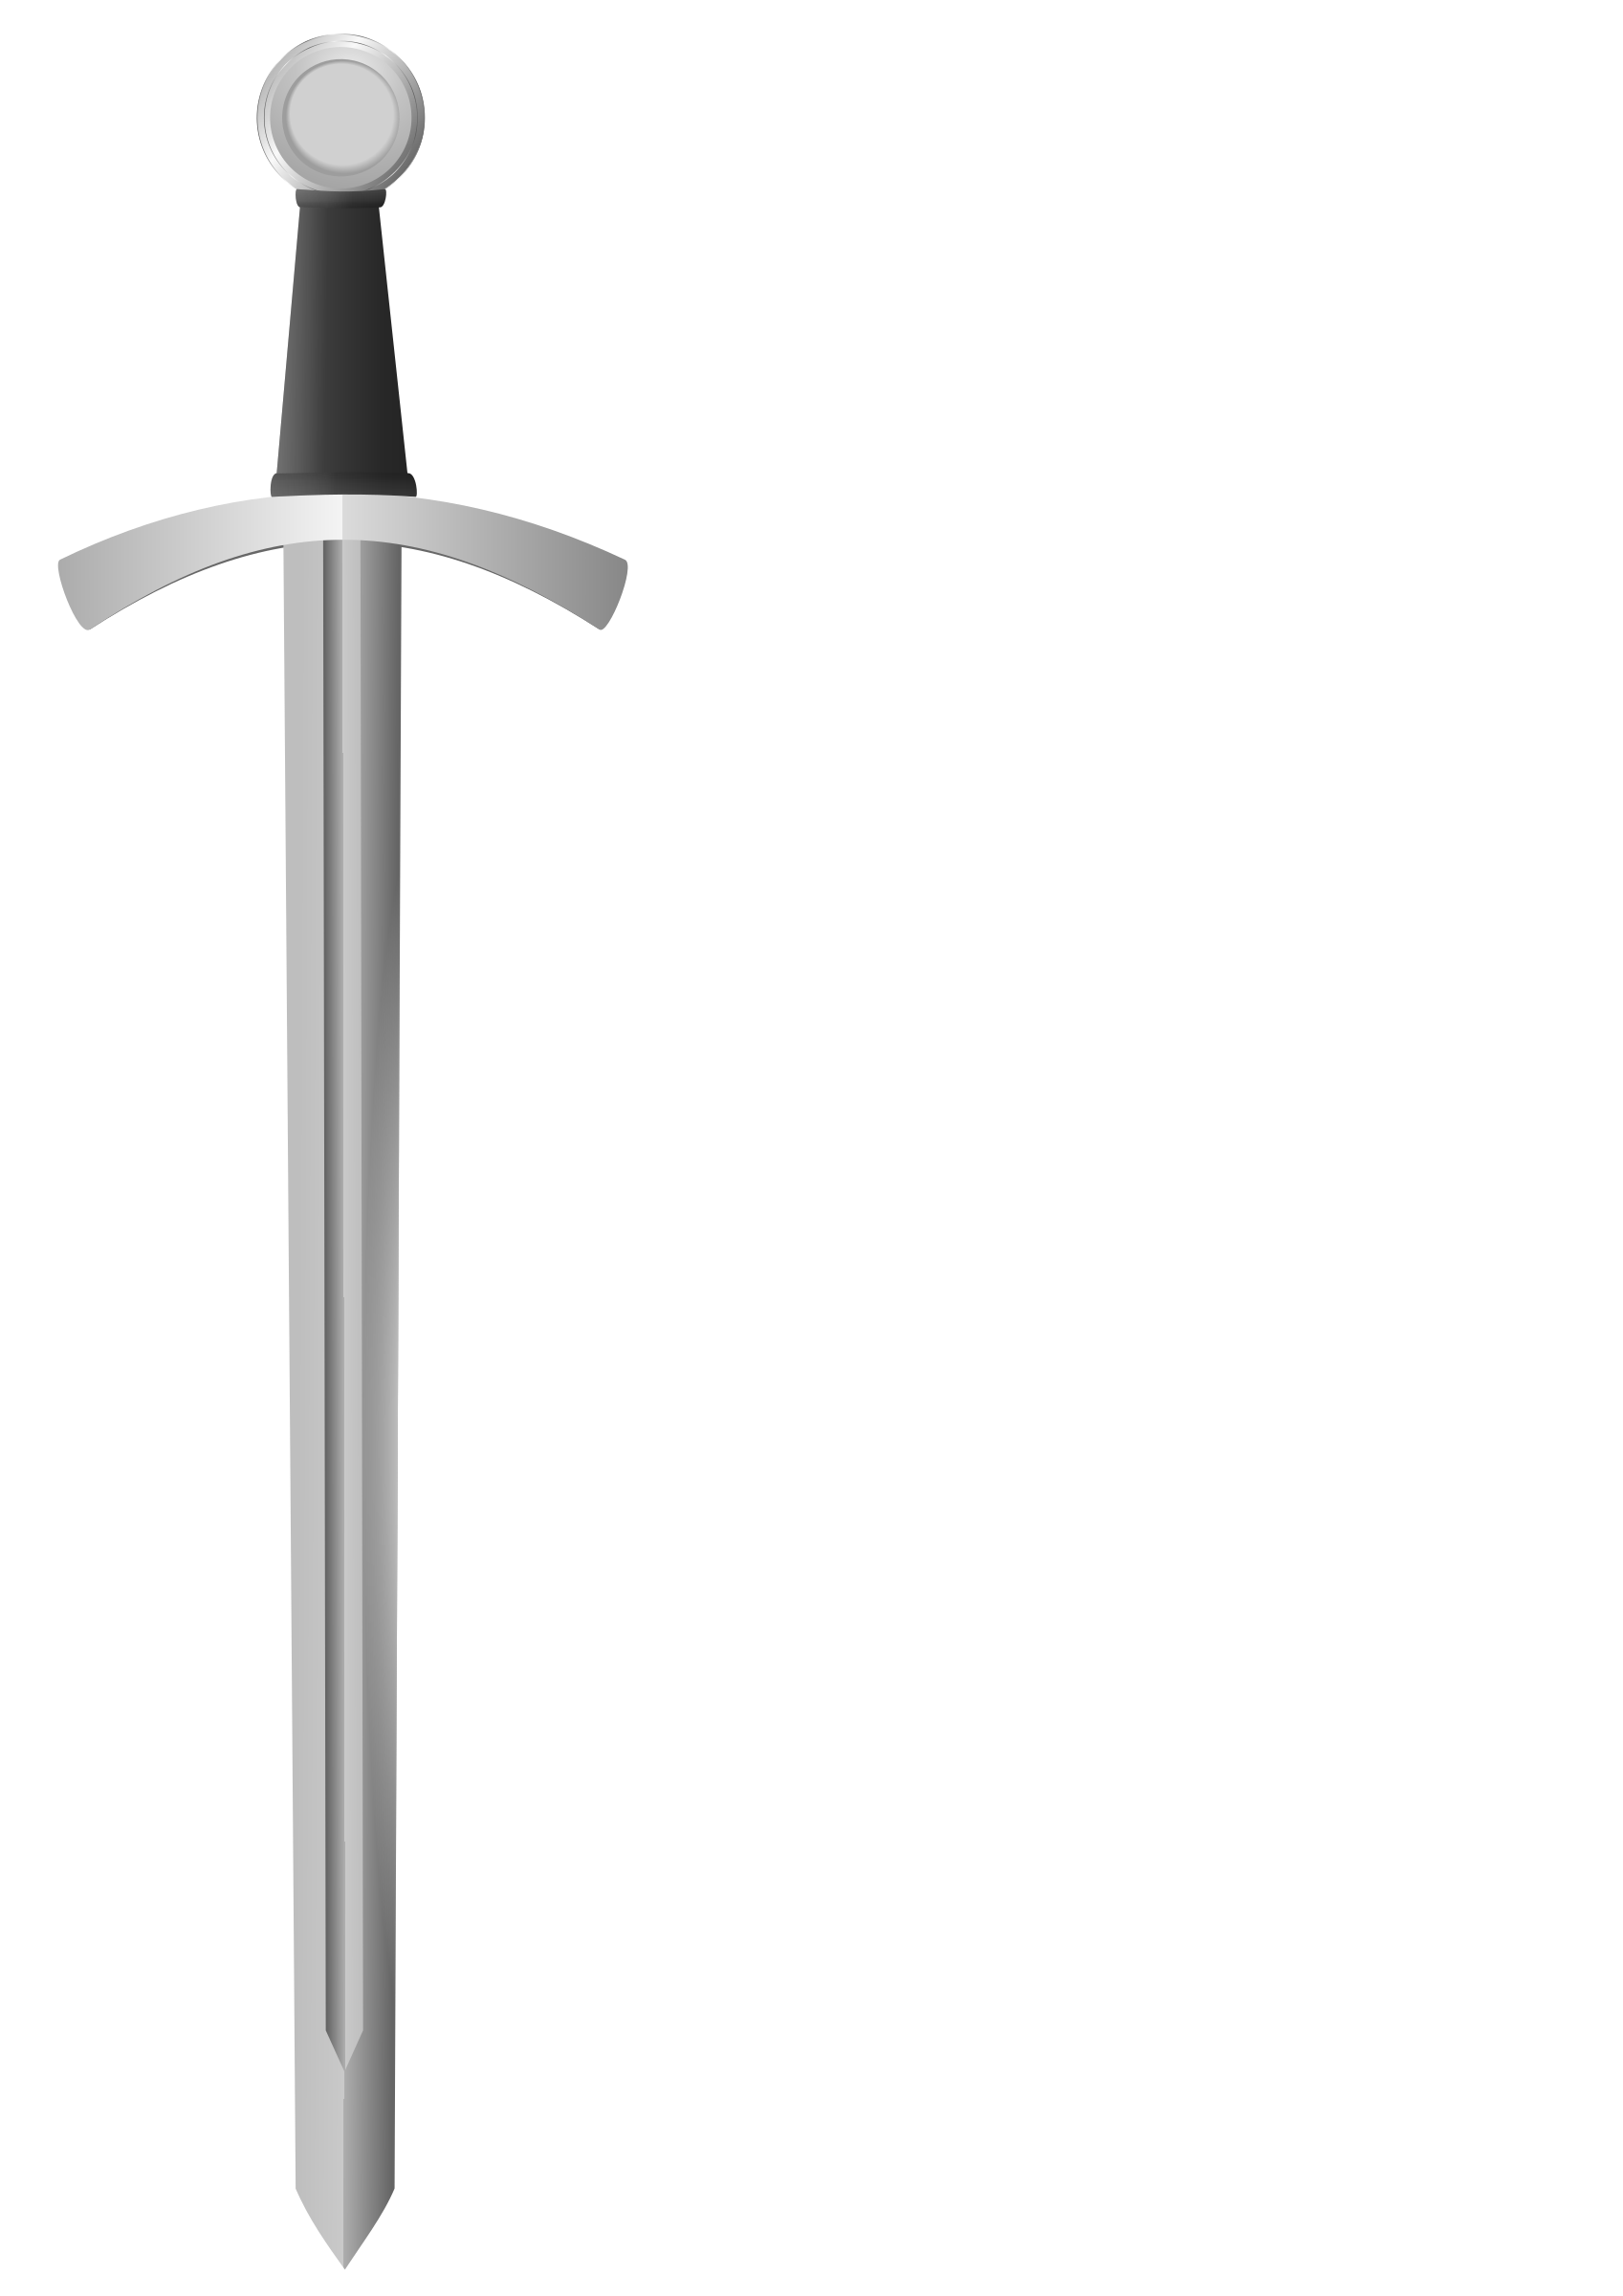 drawings of medieval swords